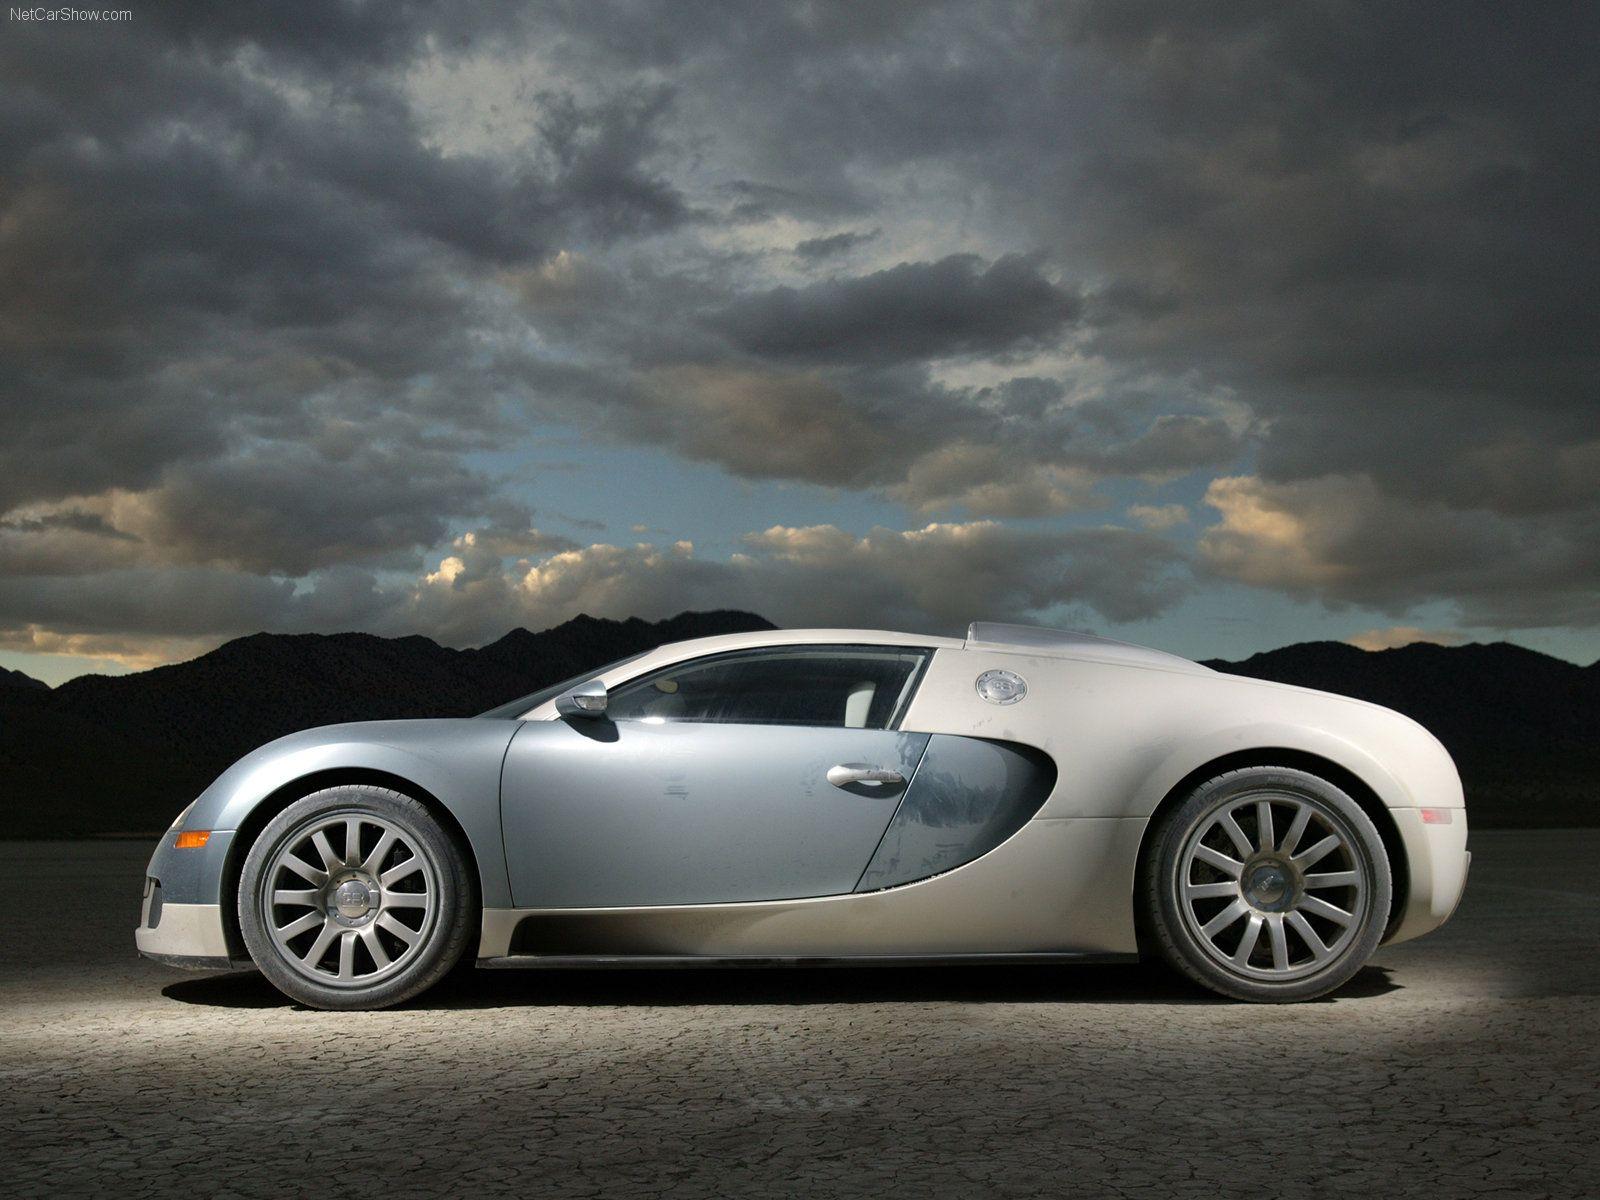 Bugatti Veyron HD Wallpaper and Background